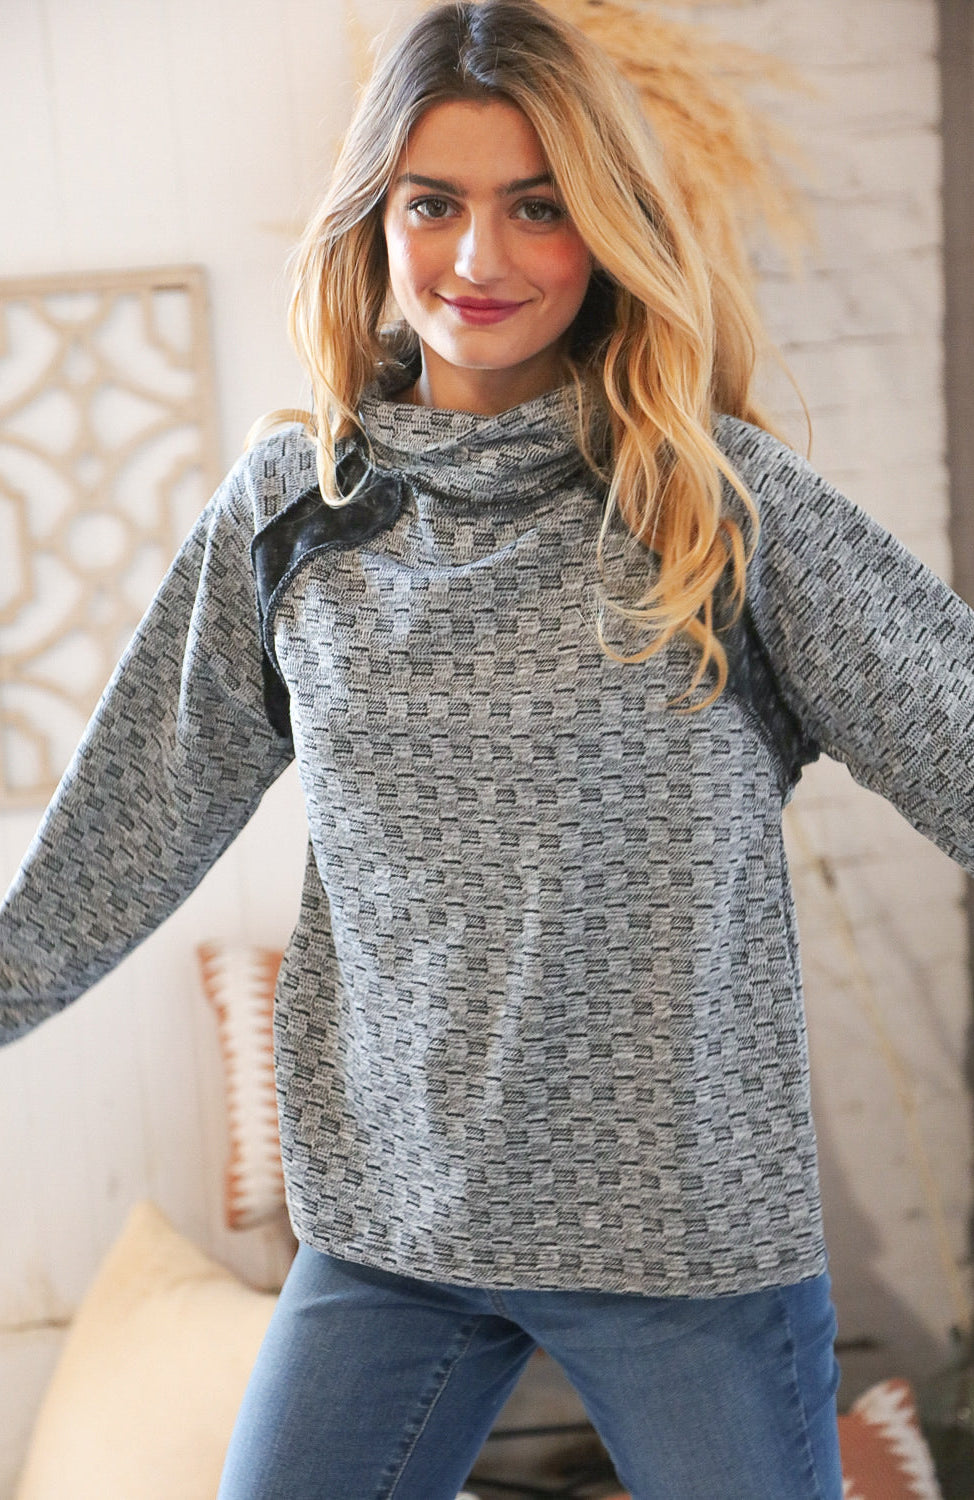 Grey Turtleneck Textured Jacquard Sweater Top Haptics